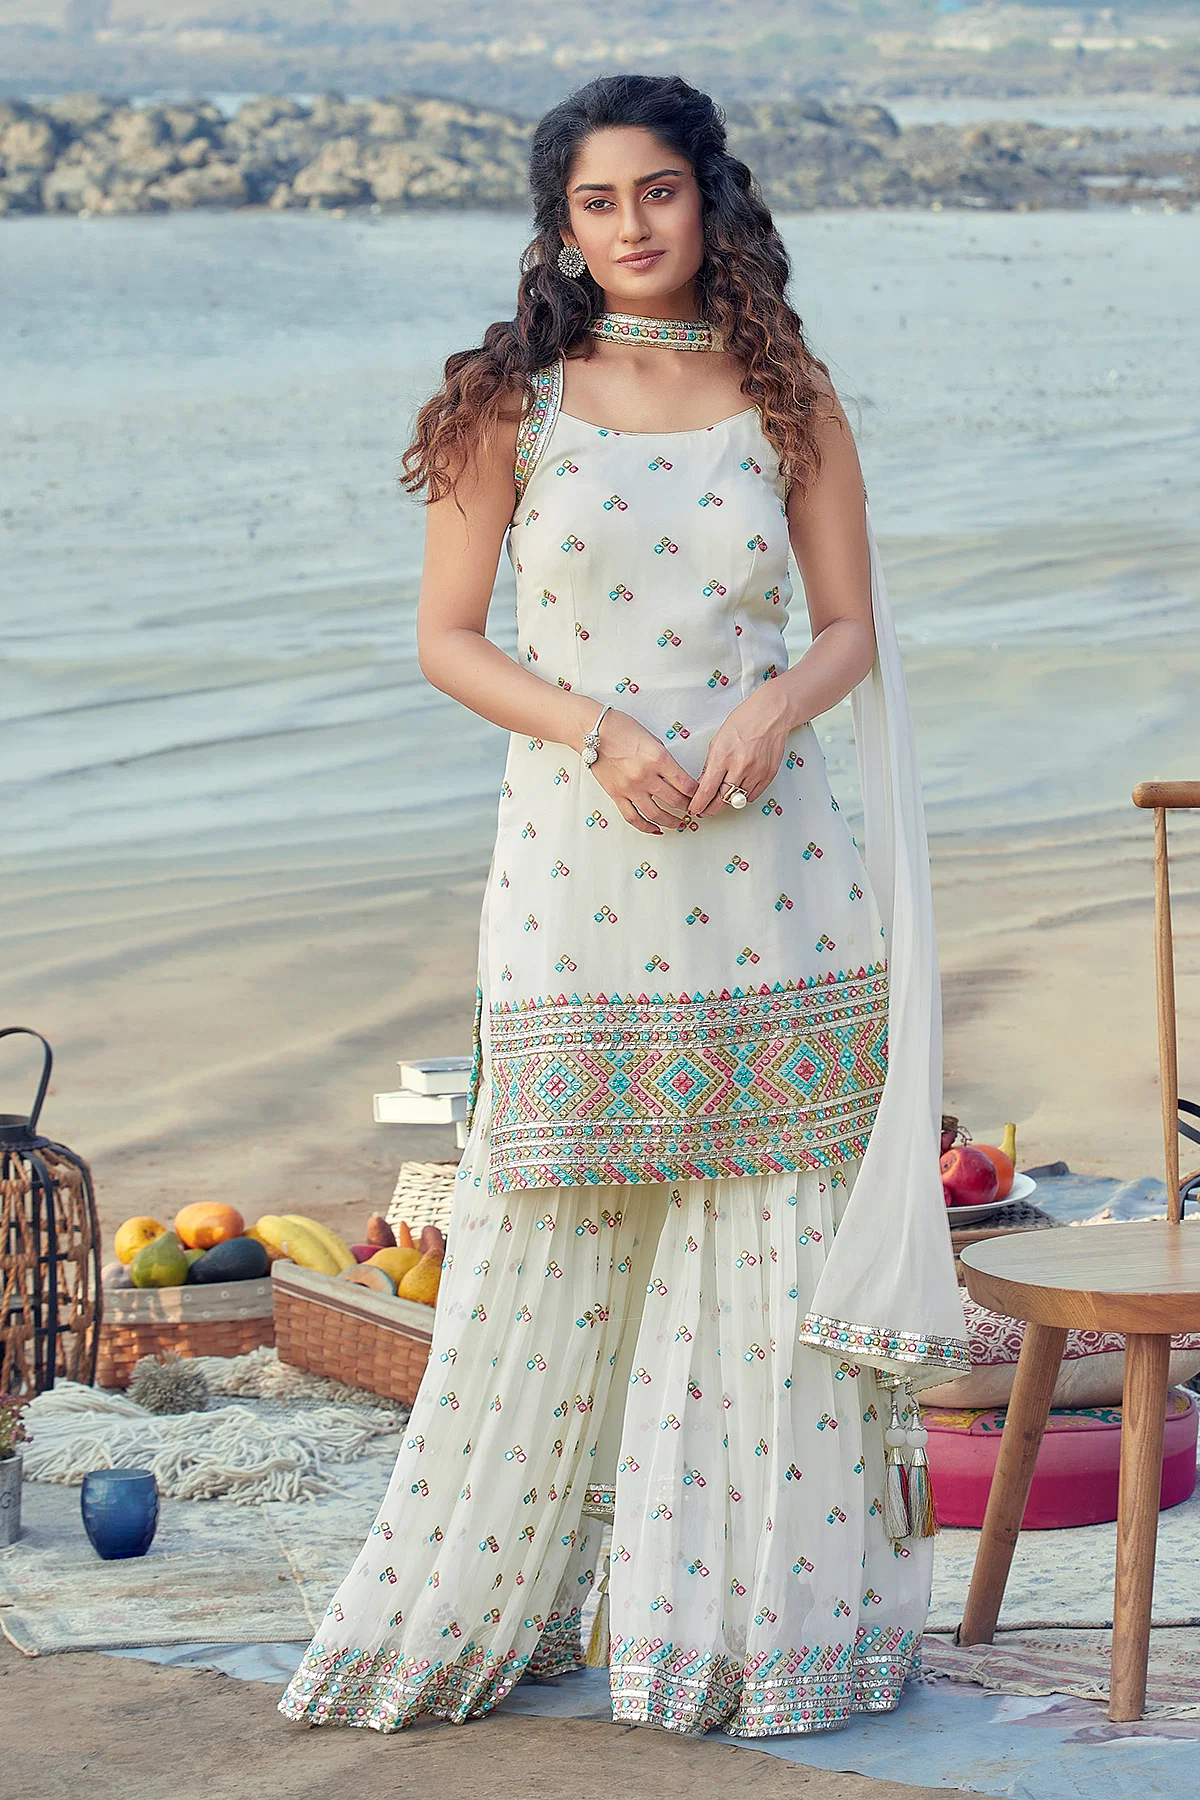 Amazon.com: Designerharsha Wedding Indian Embroidered Salwar Kameez Suits  Pakistani Punjabi Patiyala with Dupatta Dresses (Unstitched, Choice 1) :  Clothing, Shoes & Jewelry